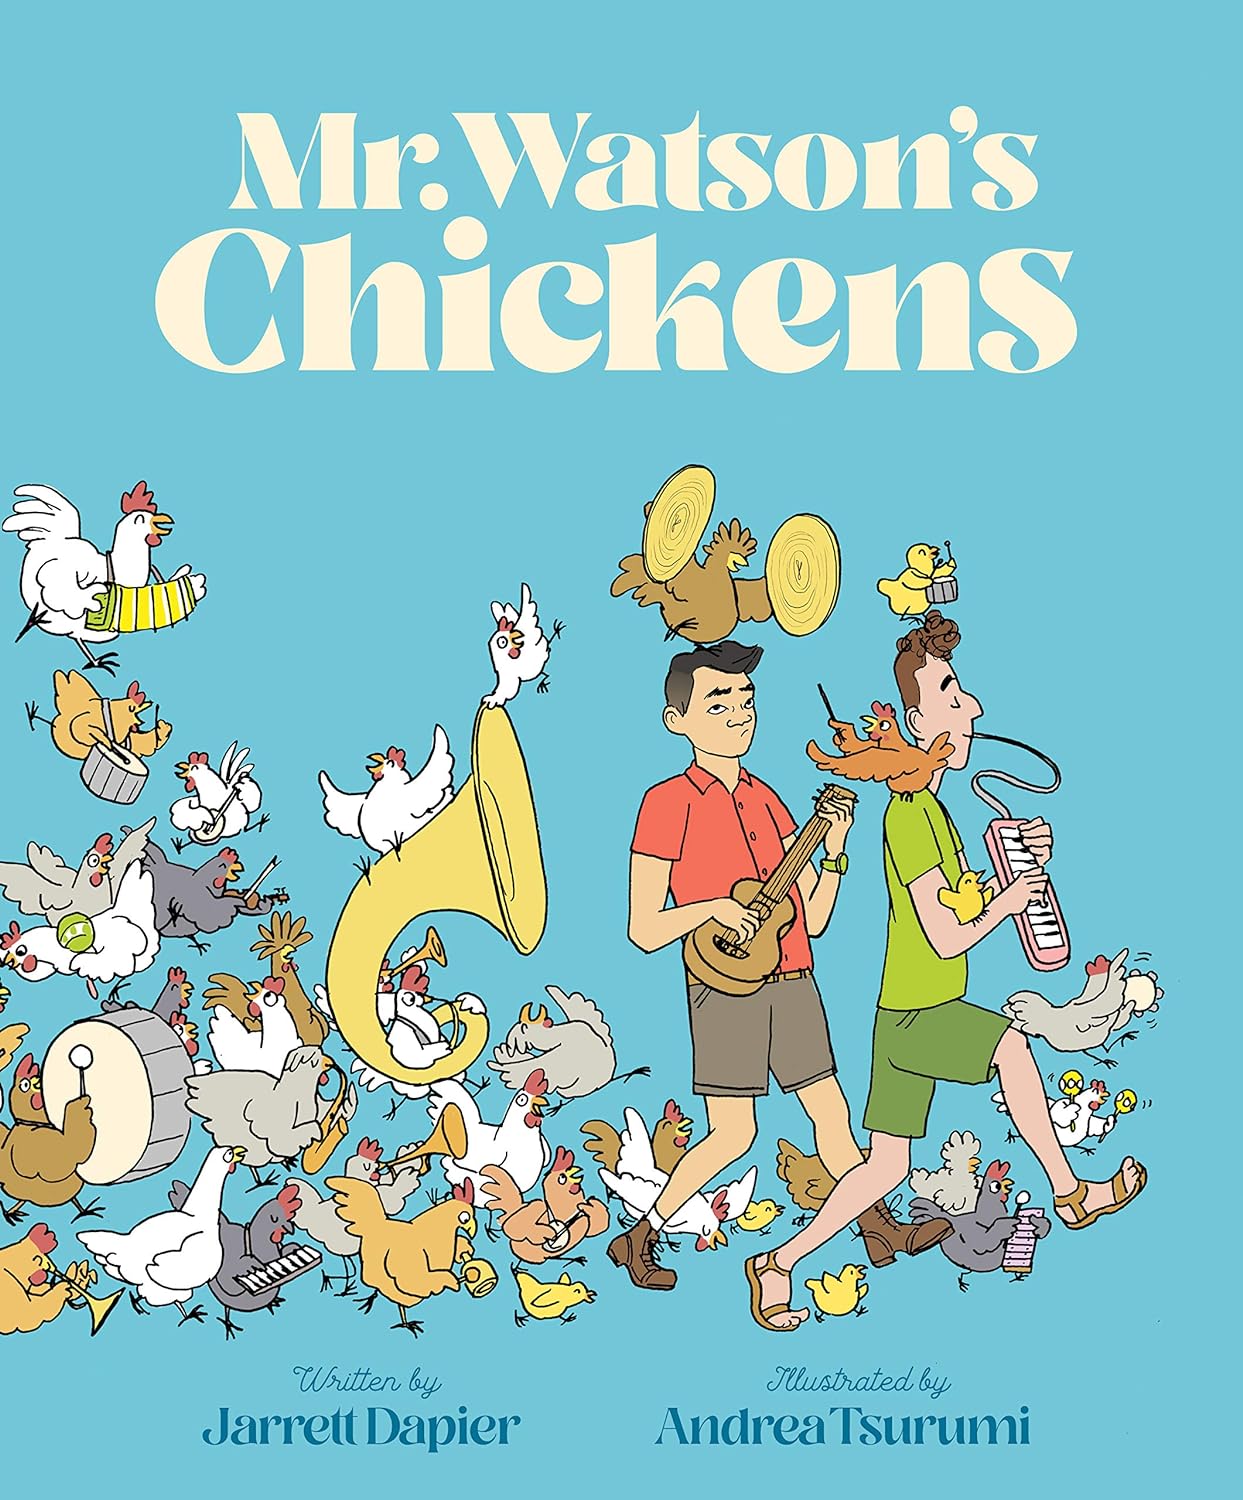 Mr. Watson's Chickens